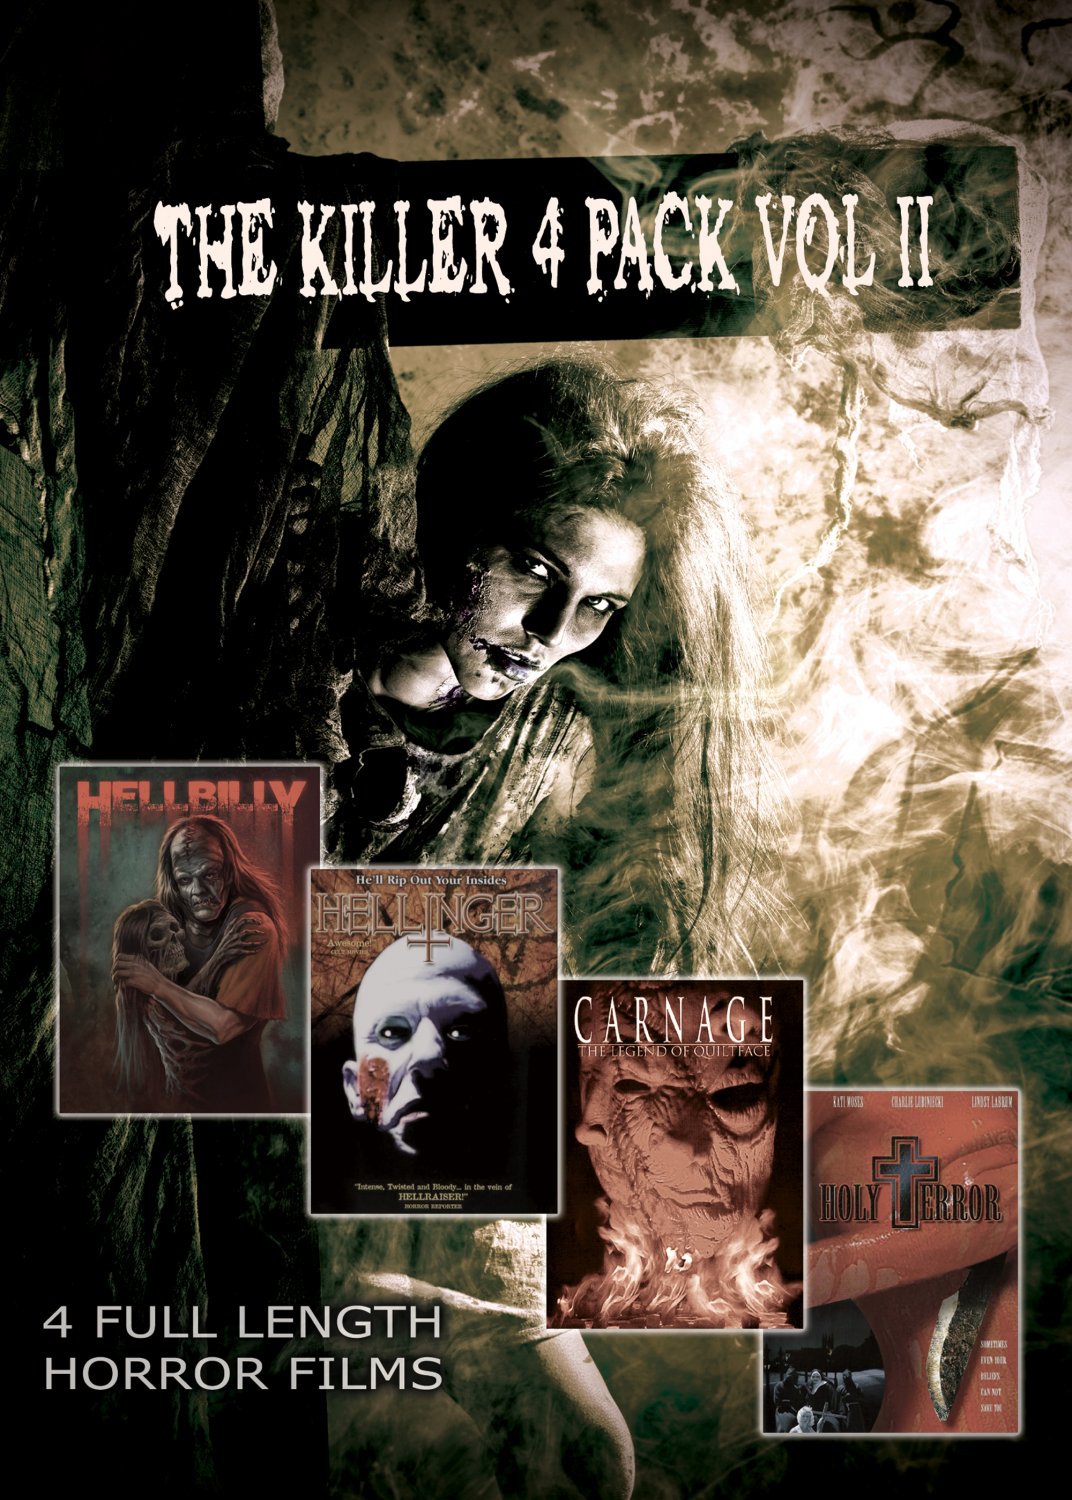 The Killer 4 Pack Vol II (USB) Flash Drive